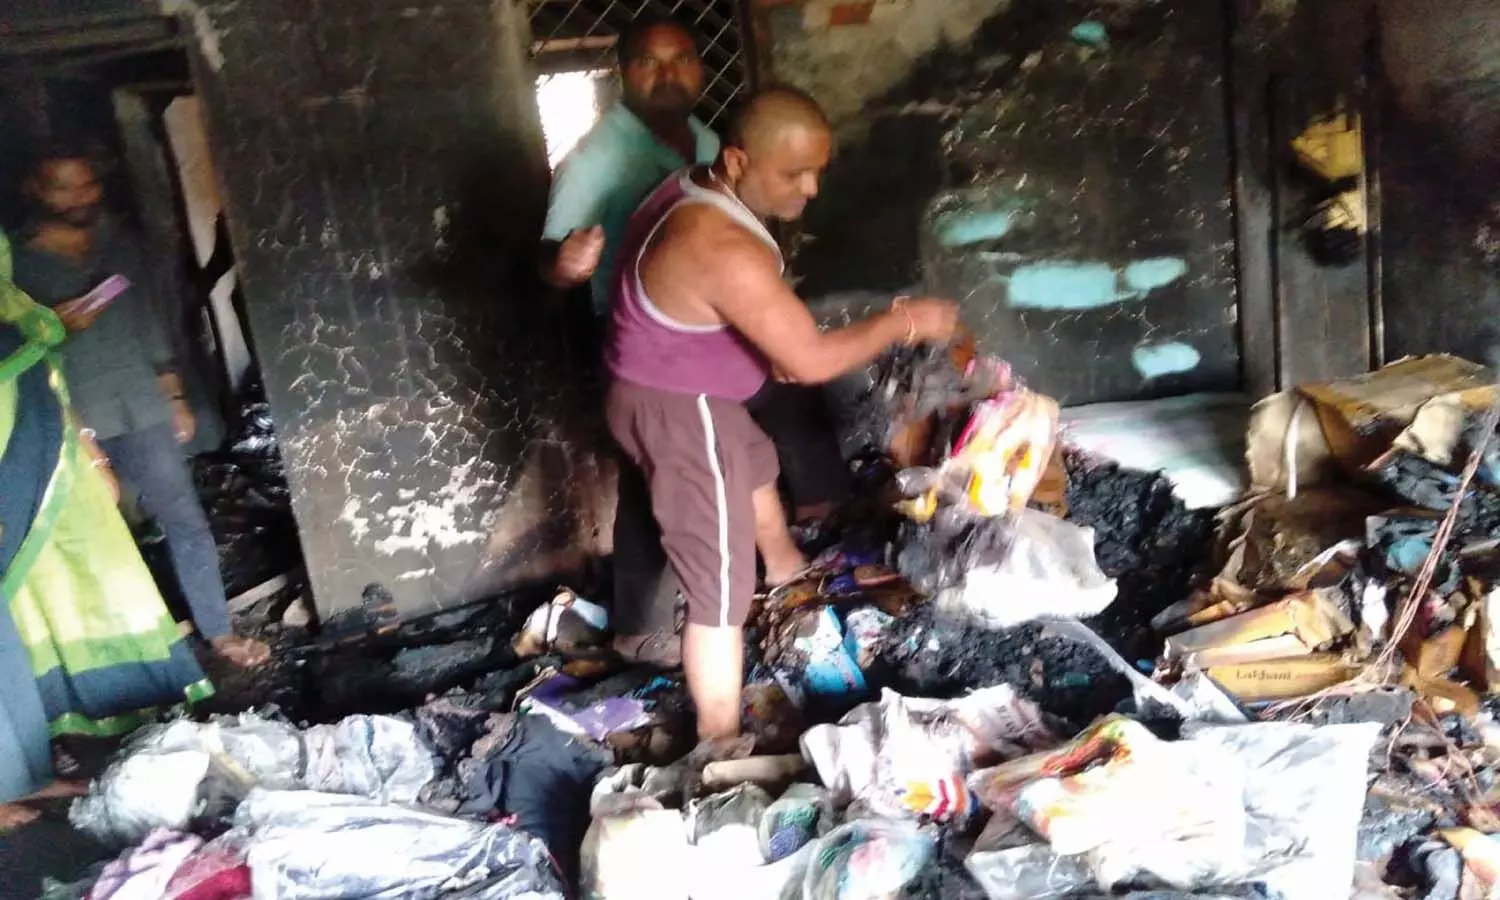 दुकान में भड़की आग से लाखों का सामान जलकर हुआ खाक, मऊगंज जिले की घटना